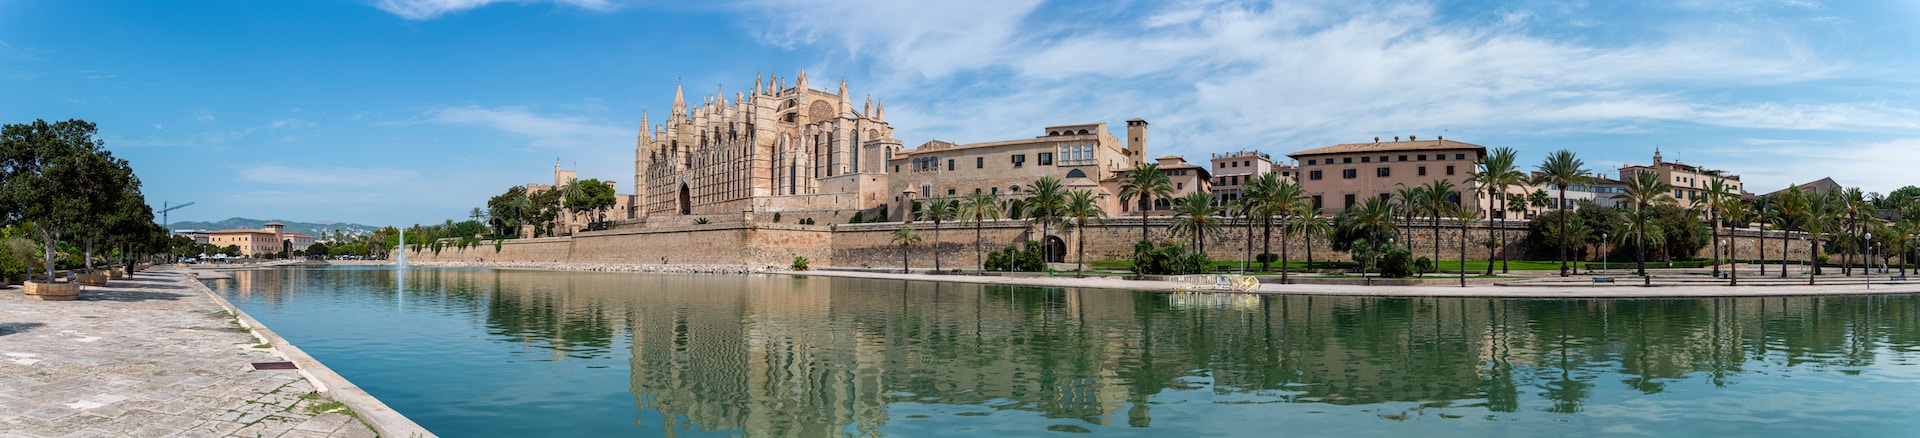 Die Kathedrale besichtigen - Kultur erleben im Last-minute-Familienurlaub auf Mallorca